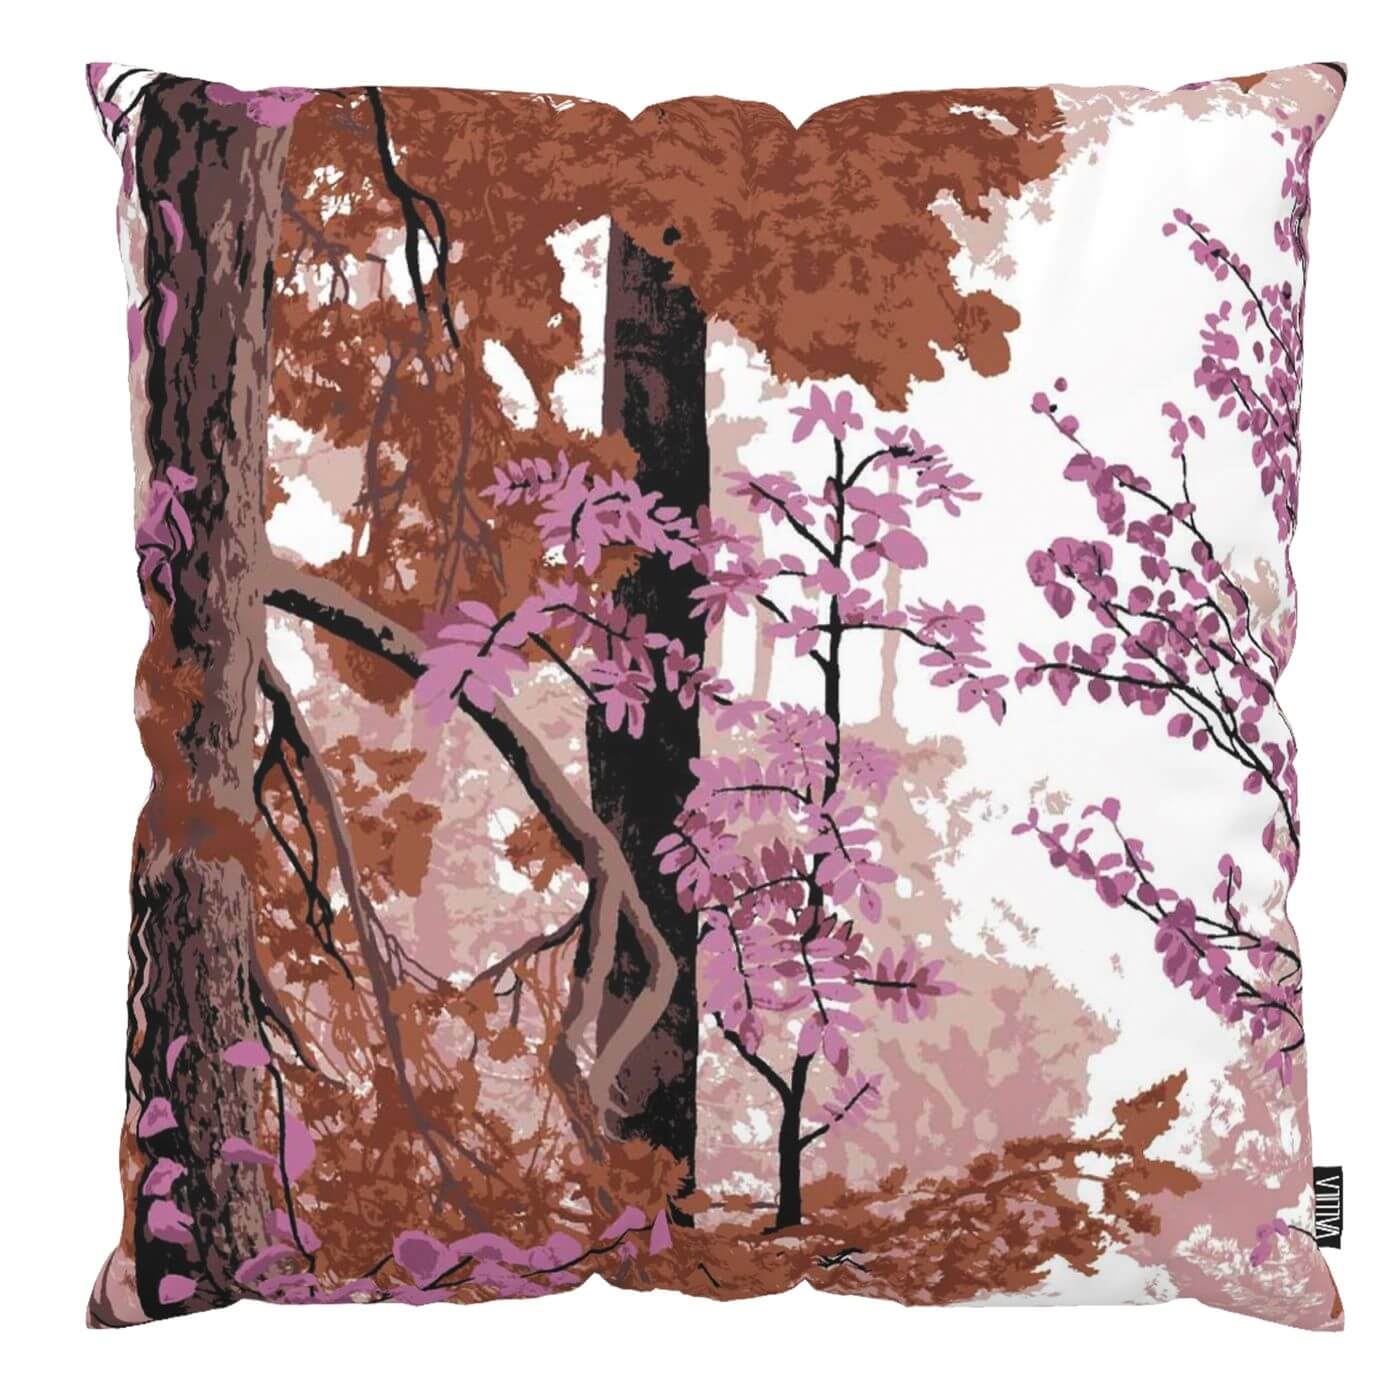 Poszewka jesienna HARMONIA z bawełny ozdobna na poduszkę w odcieniu purpury. Nowoczesny wzór w malowane jesienne liście i drzewa. Skandynawski design